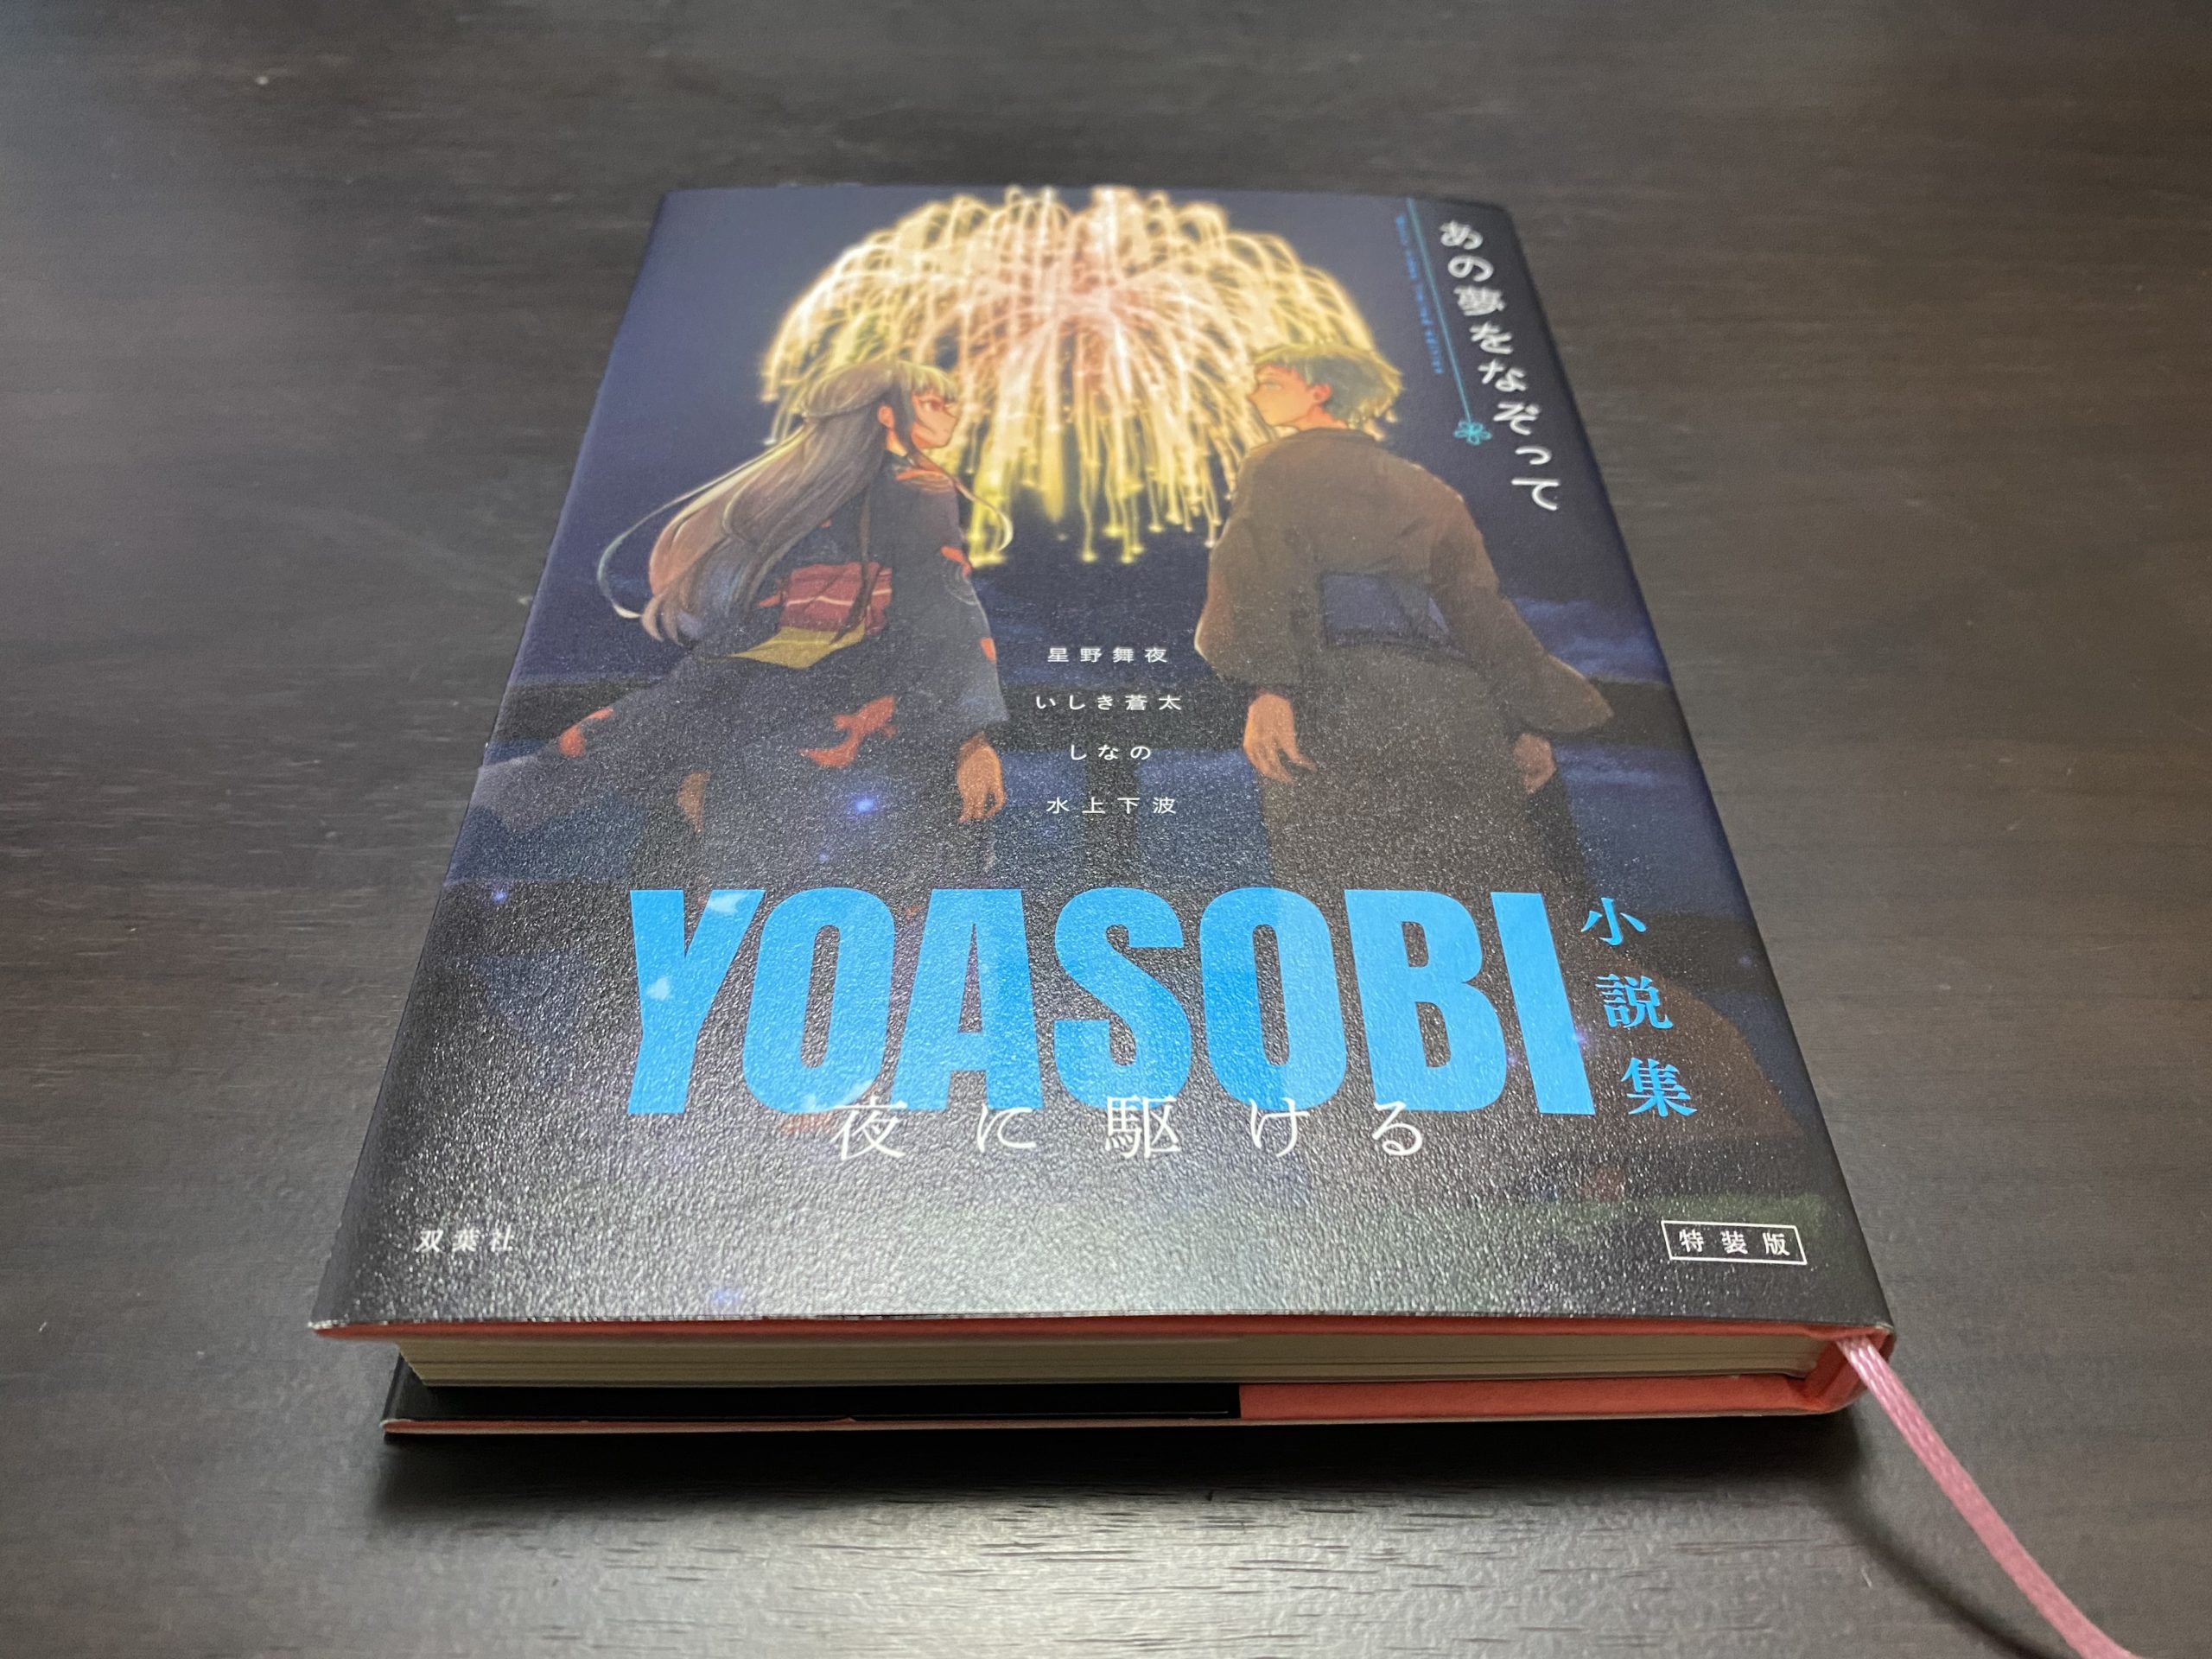 書評「夜に駆ける YOASOBI 小説集」【小説を読んでから聴くと音楽に絵が浮かぶ】